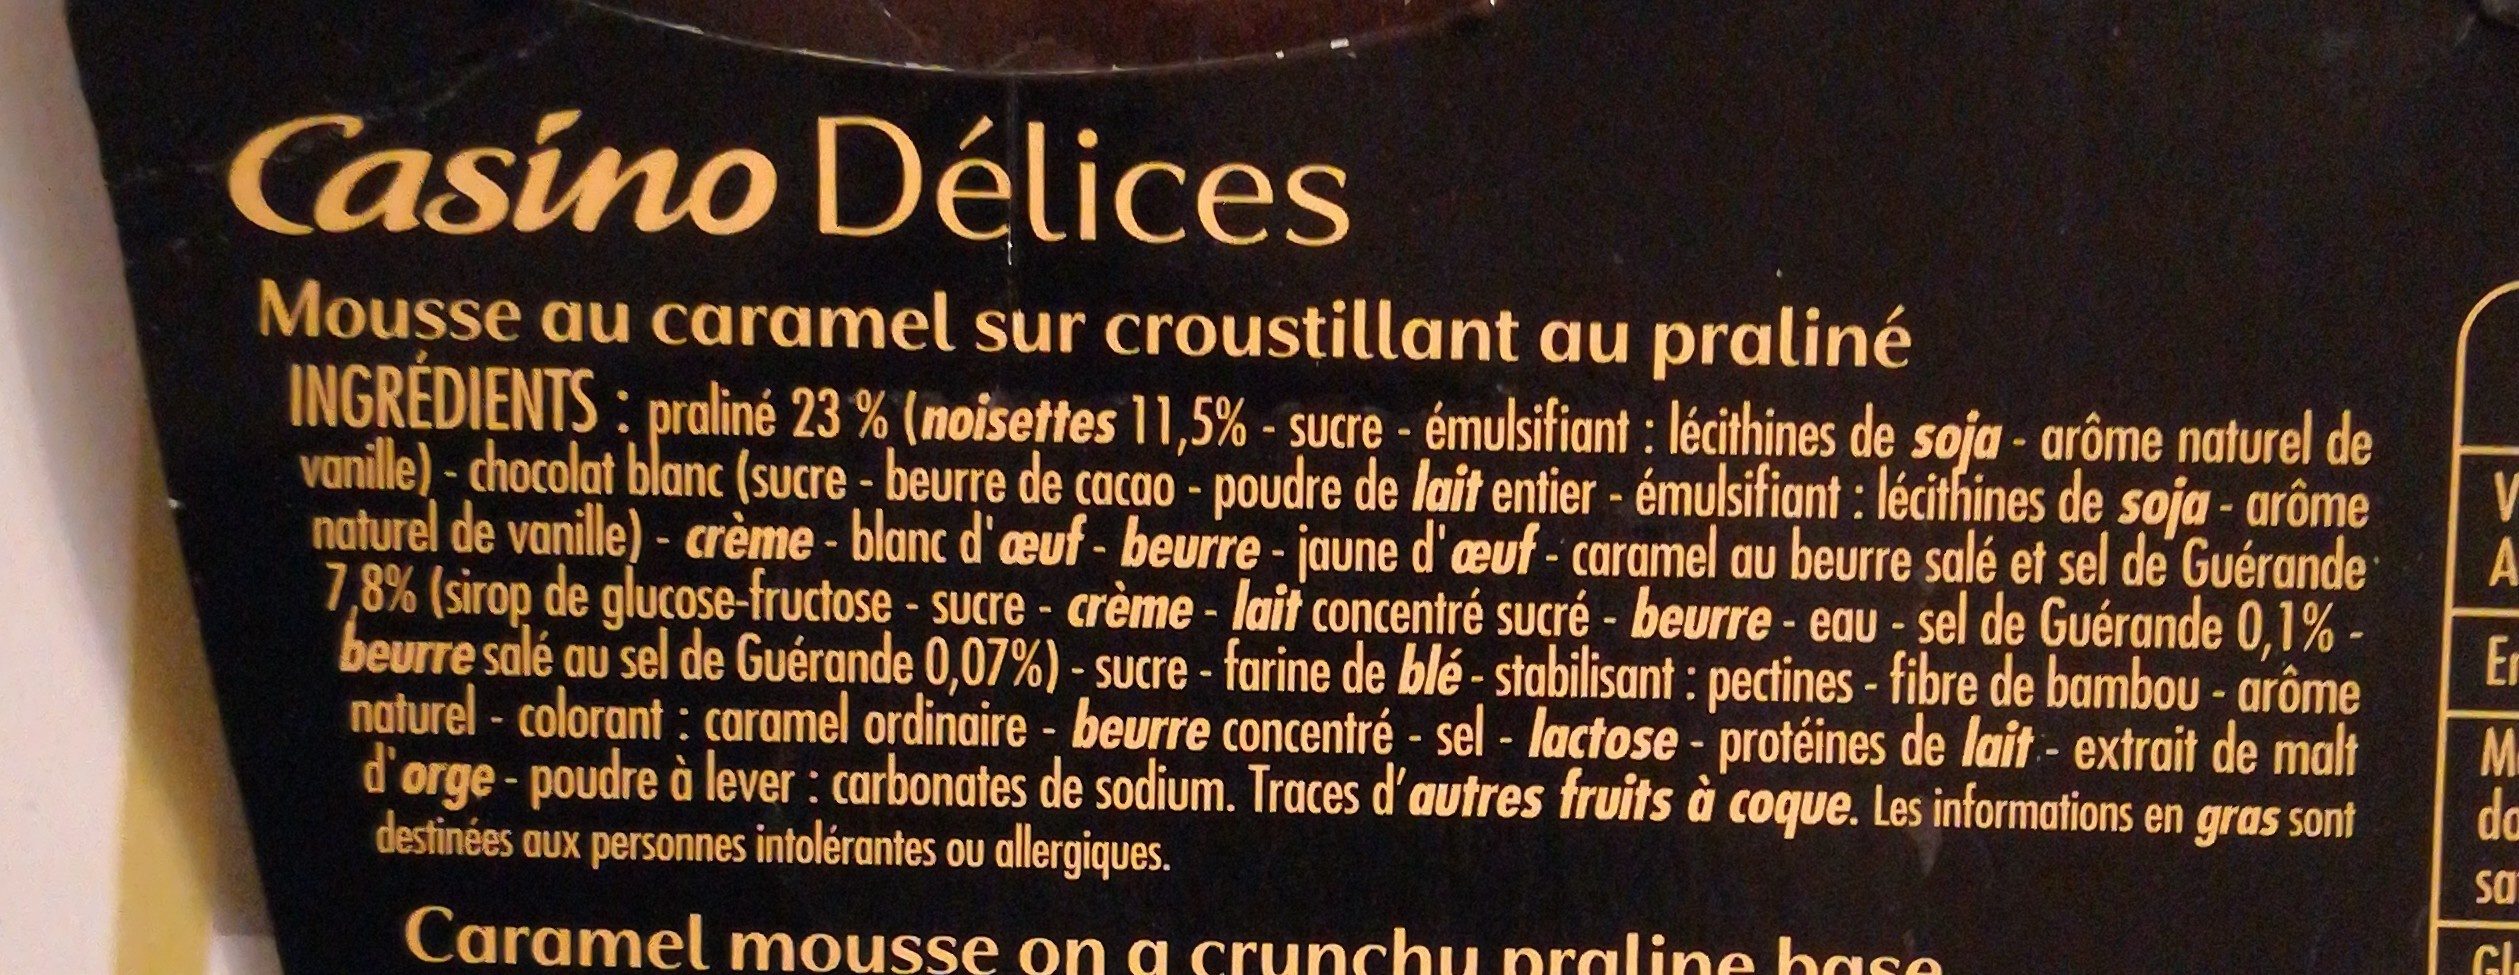 L'extraordinaire mousse au caramel sur lit croustillant au praliné - Ingrediënten - fr